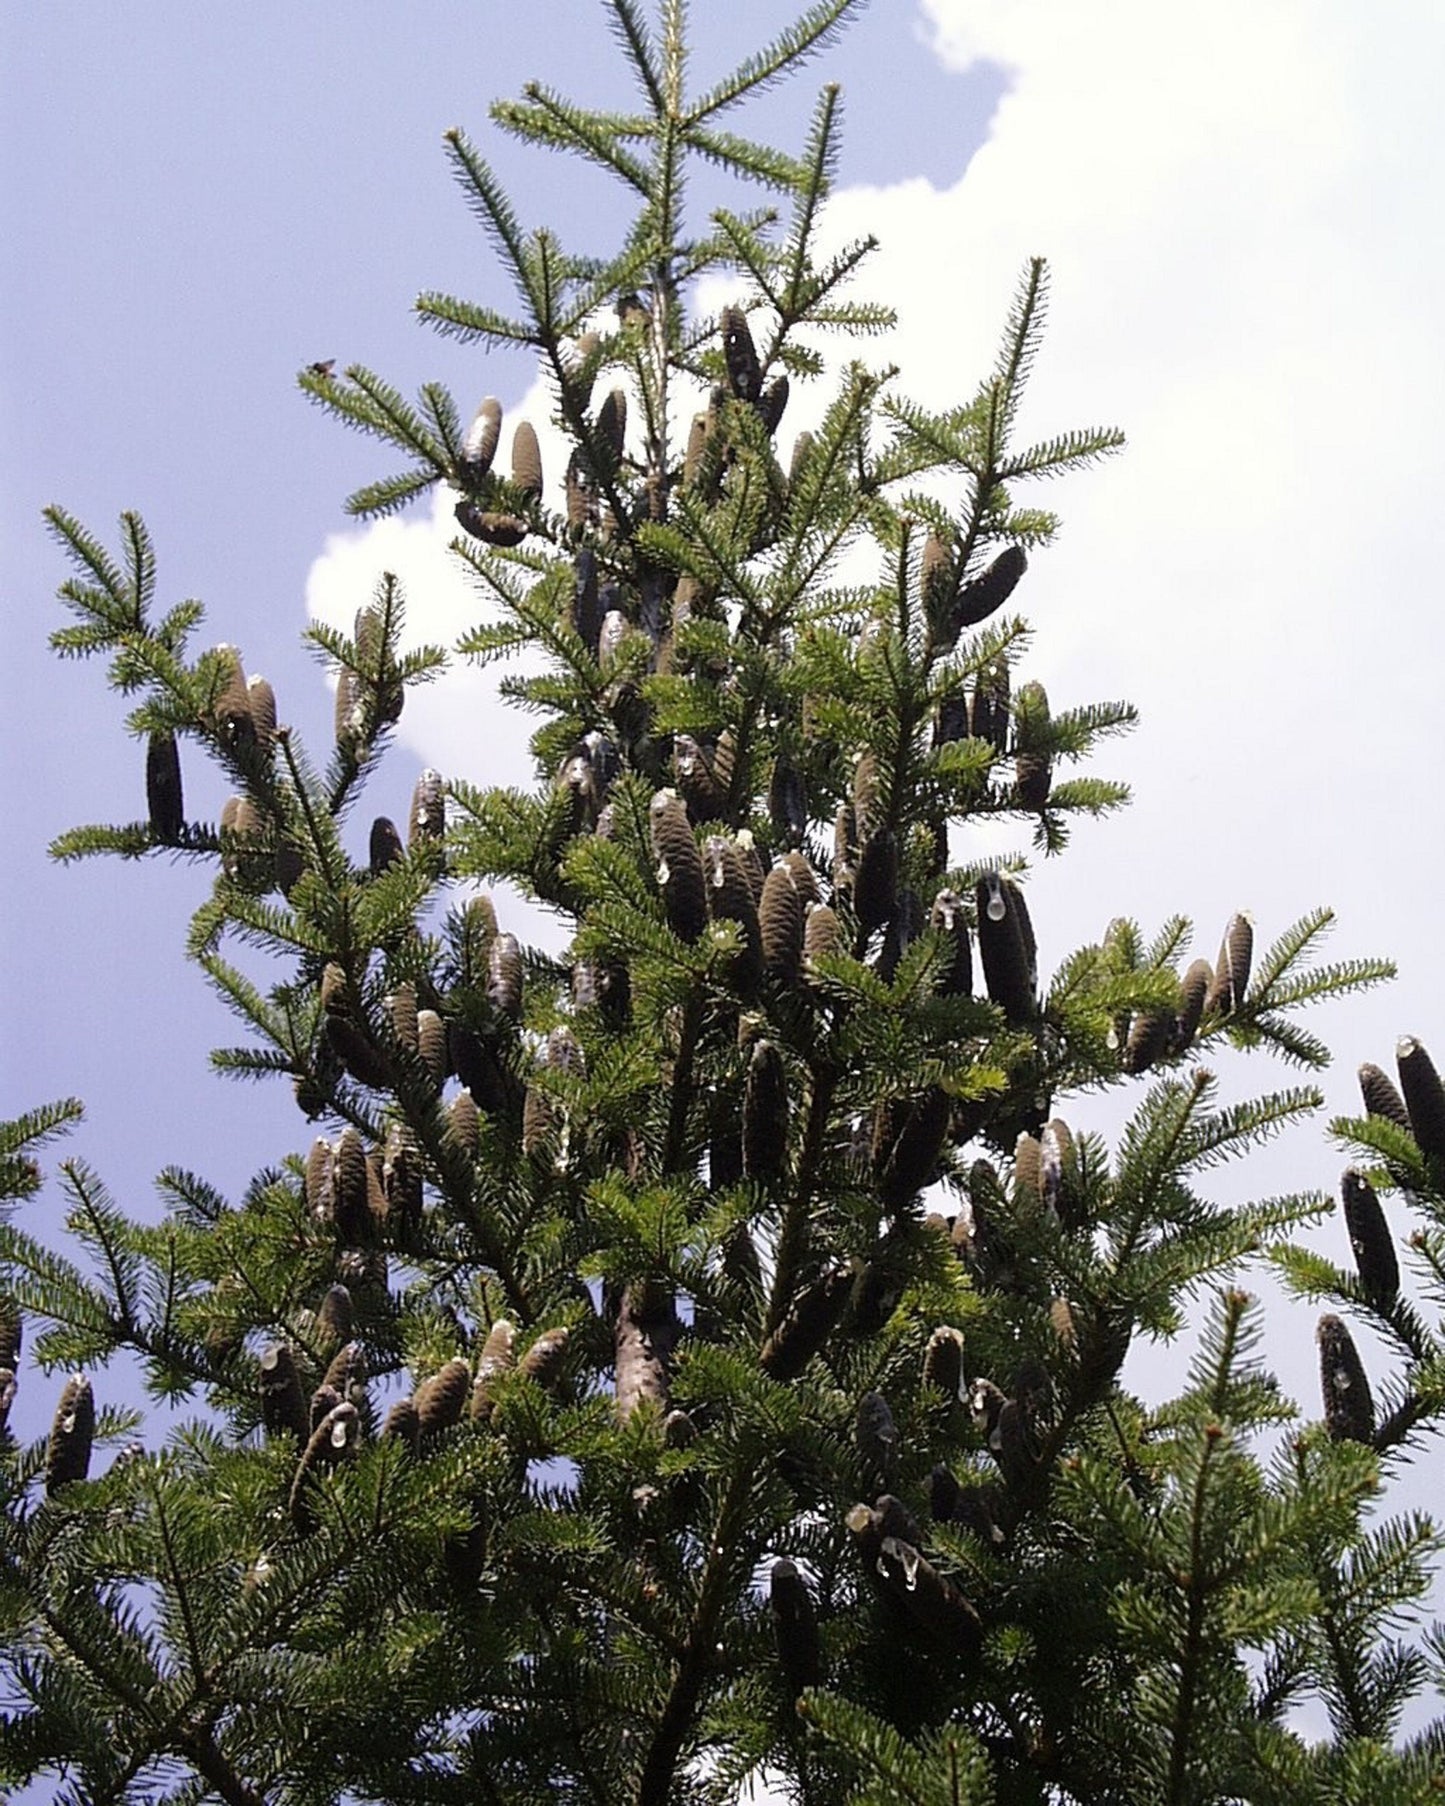 Abies Balsamea * Balsam Fir * Christmas Tree * Bonsai Conifer Tree * 10 Rare Seeds *